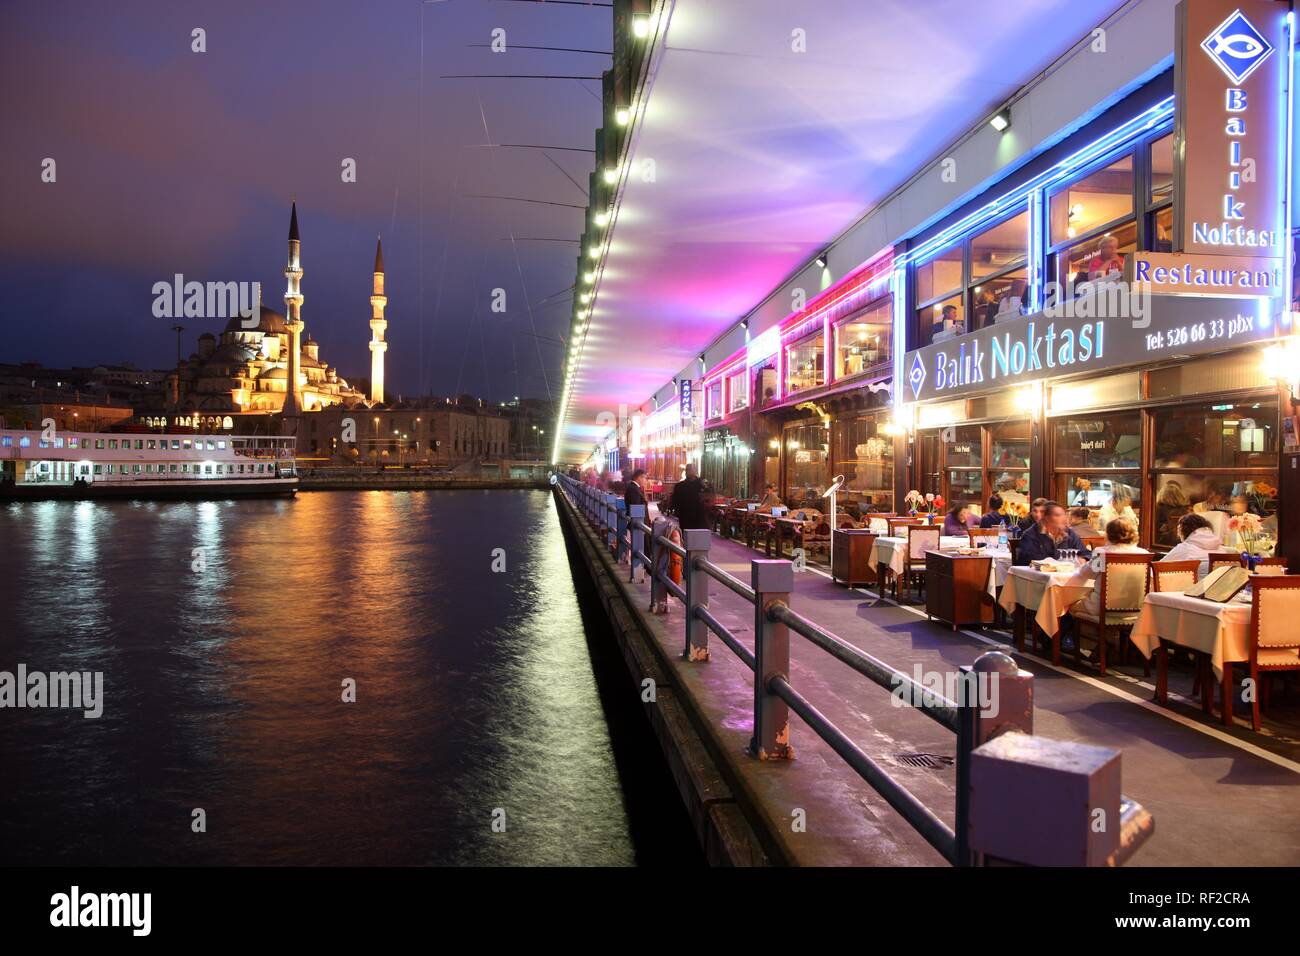 Galata Brücke über das Goldene Horn, zwei-stöckigen Straße Brücke, Verkehr oben, Bars und Restaurants unter, Istanbul, Türkei Stockfoto